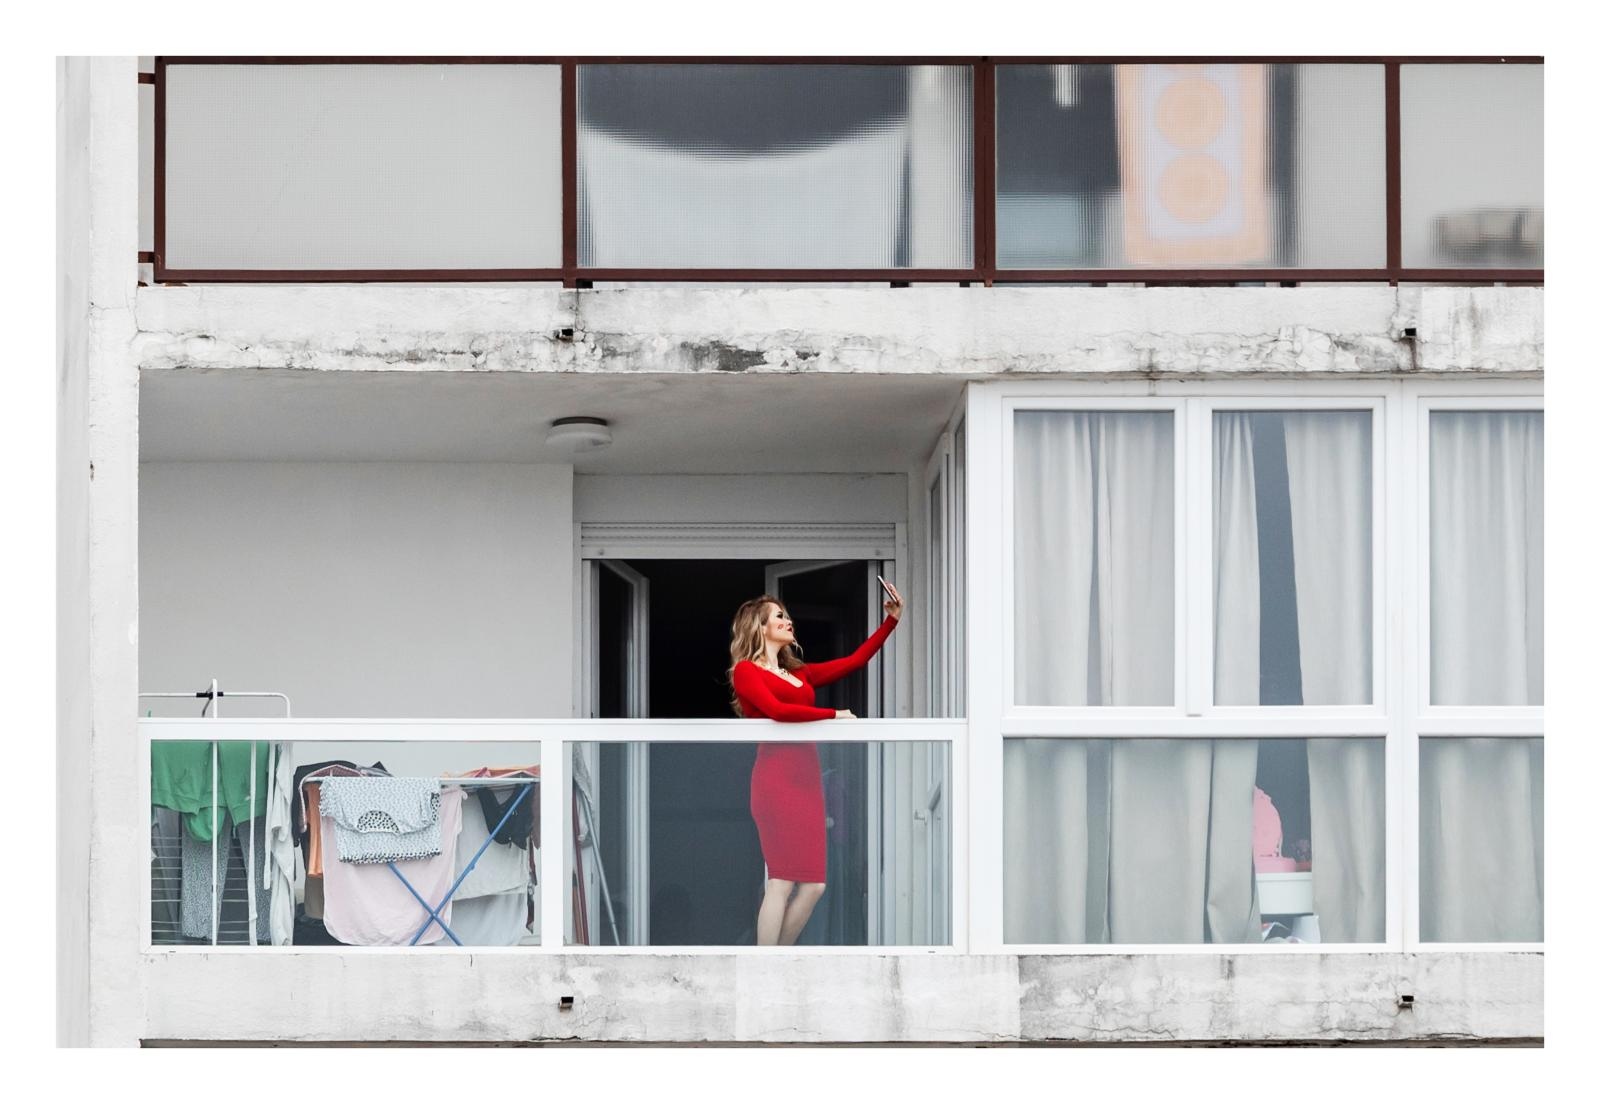 27.03.2020., Split - Gradjani izdrzavaju izolaciju na svojim prozorima i balkonima zbog zabrane izlazaka i okupljanja na javnim prostorima. Photo: Milan Sabic/PIXSELL